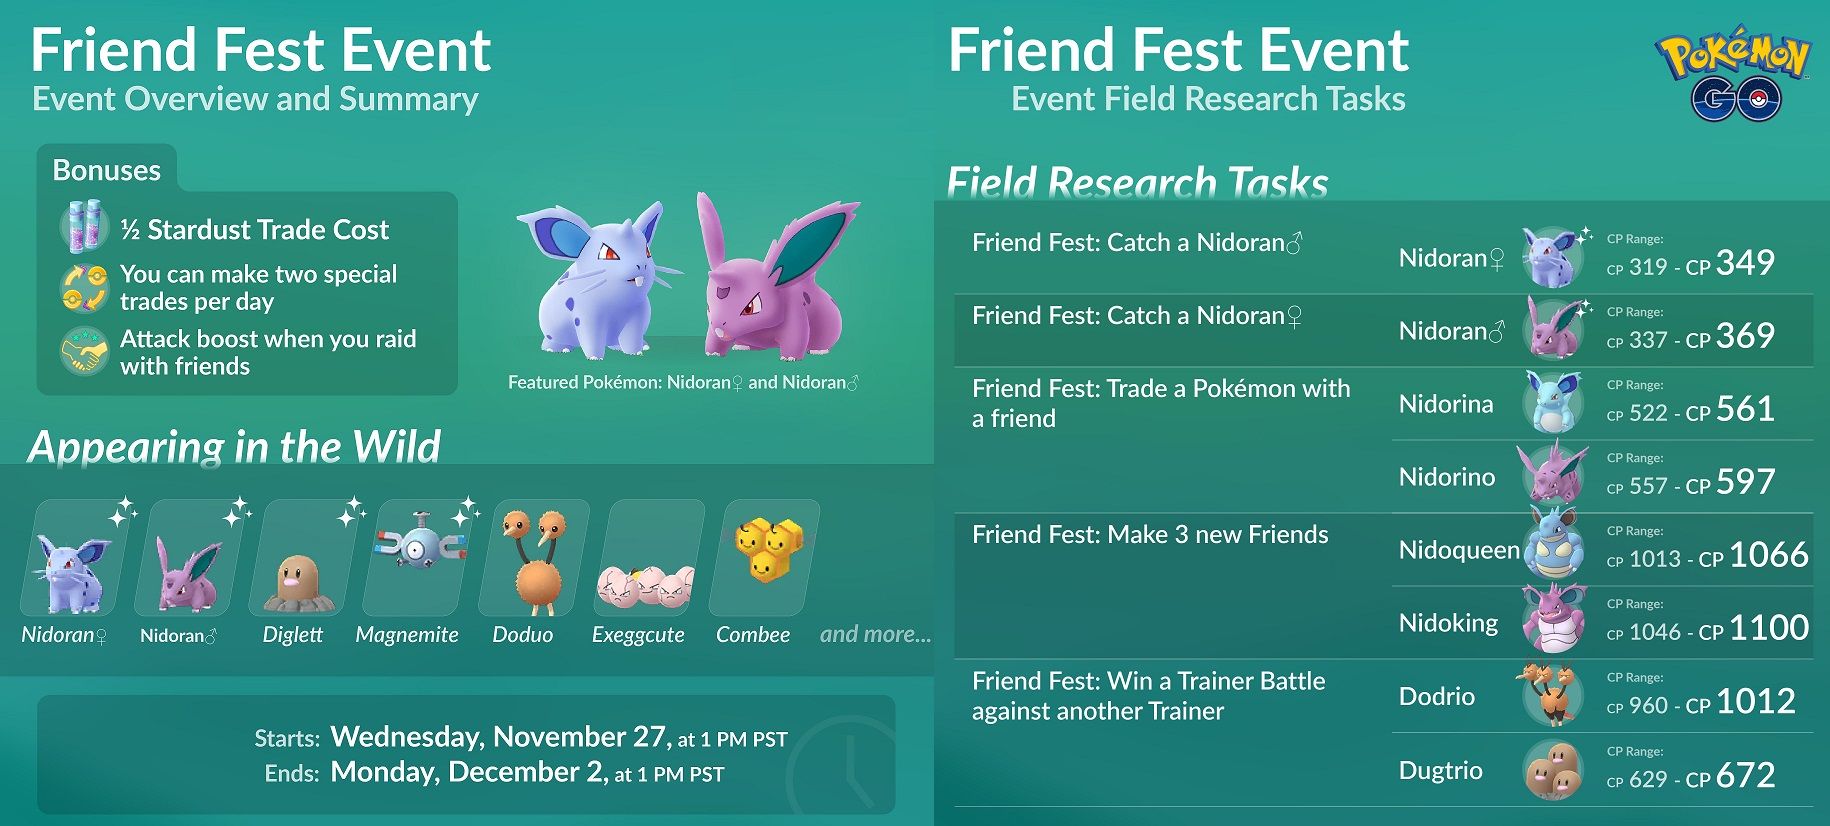 Pokemon Go Full Friend Fest Event Guide Pokemonwe Com